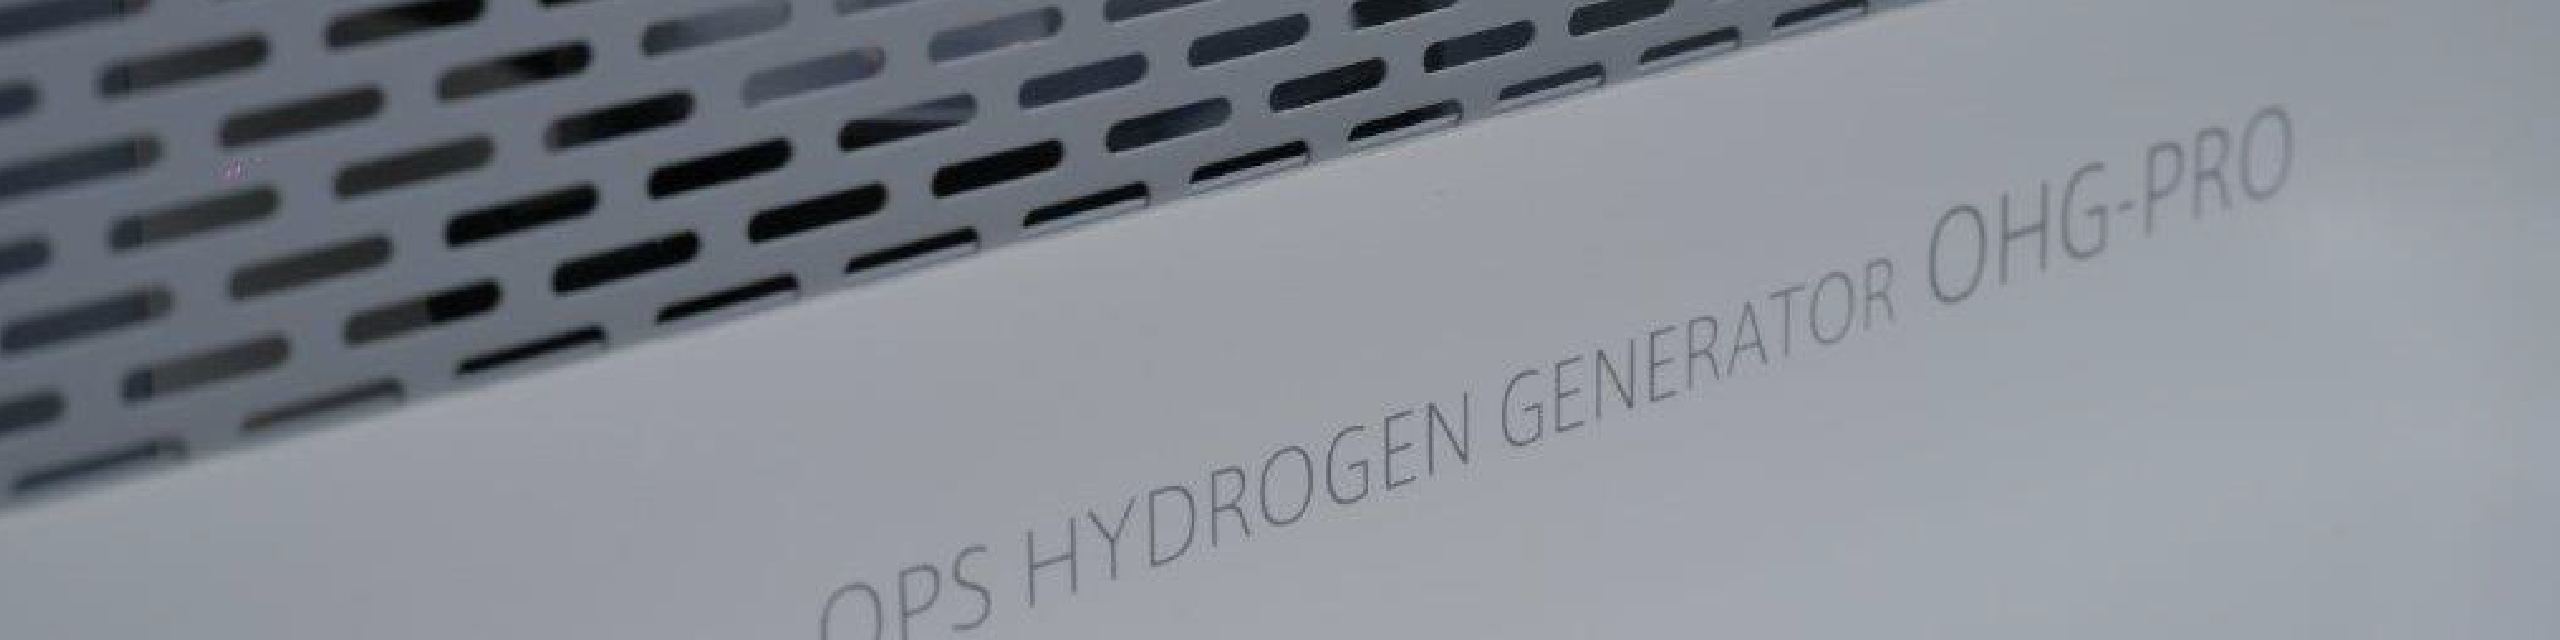 業務用水素吸入器 OHG-PRO OPS HYDROGEN GENERATOR